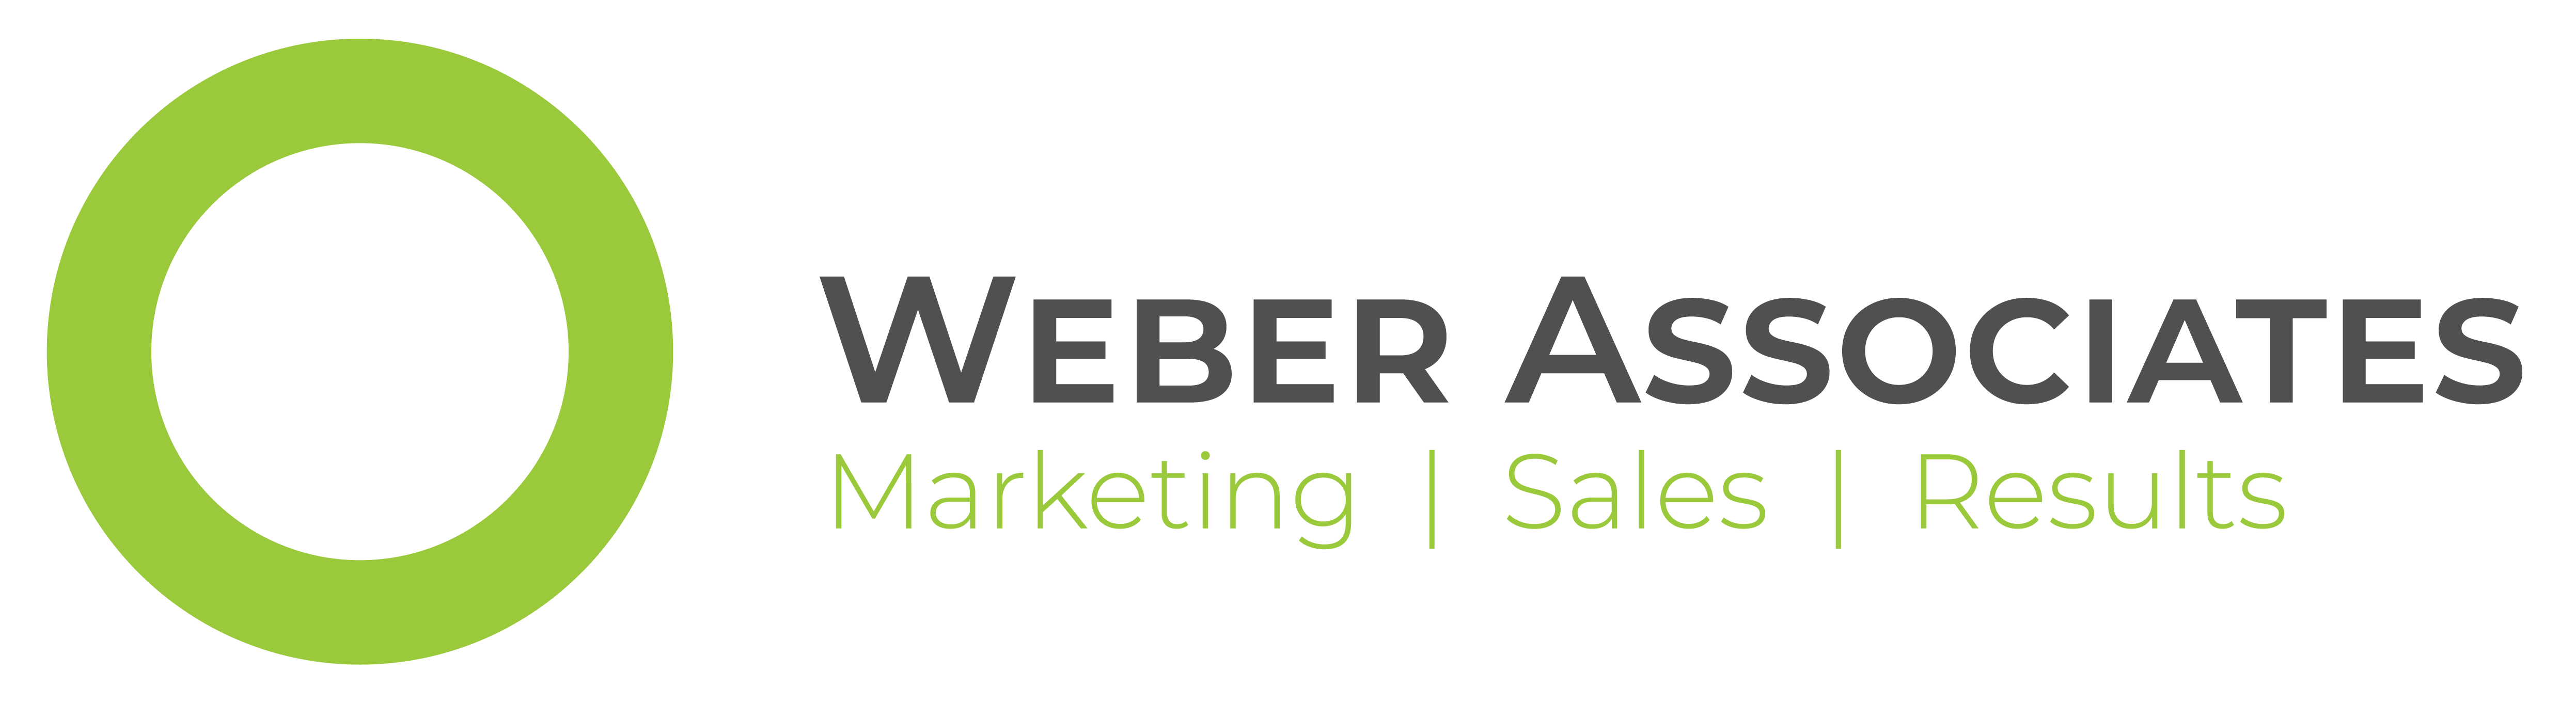 Weber Associates